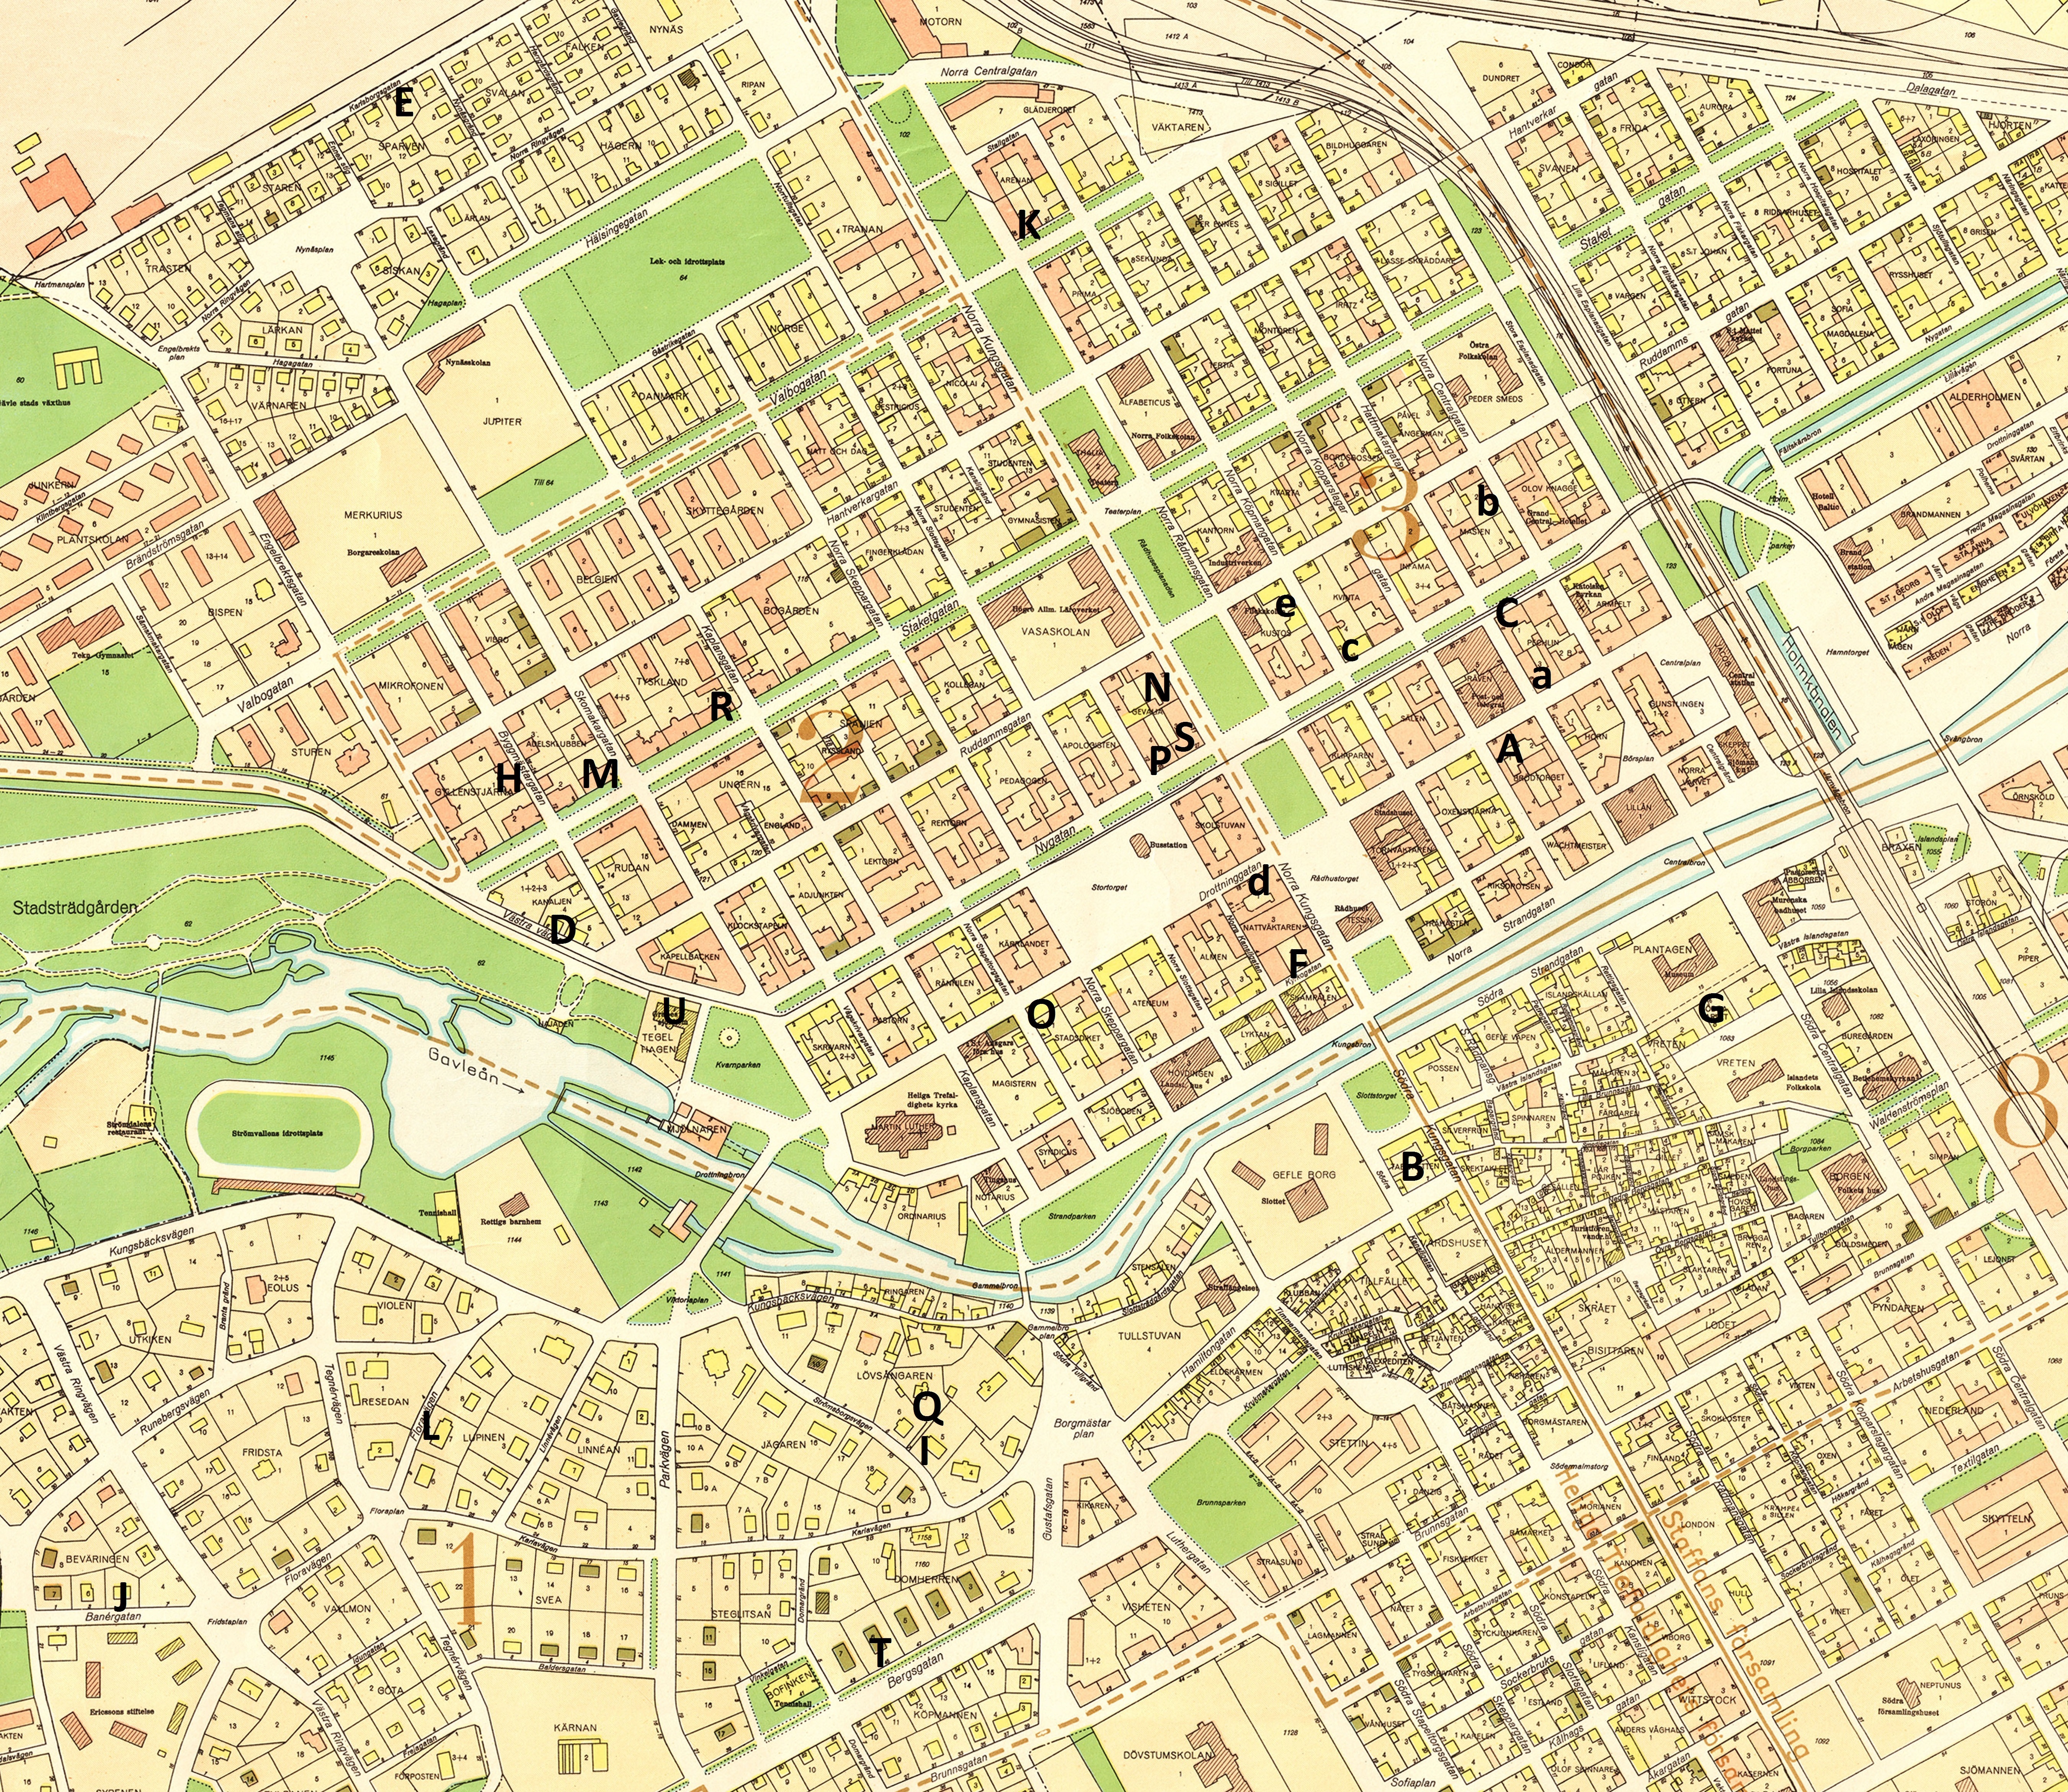 Karta (från 1950) med bostäderna markerade. (Klicka på kartan för att få den större.)